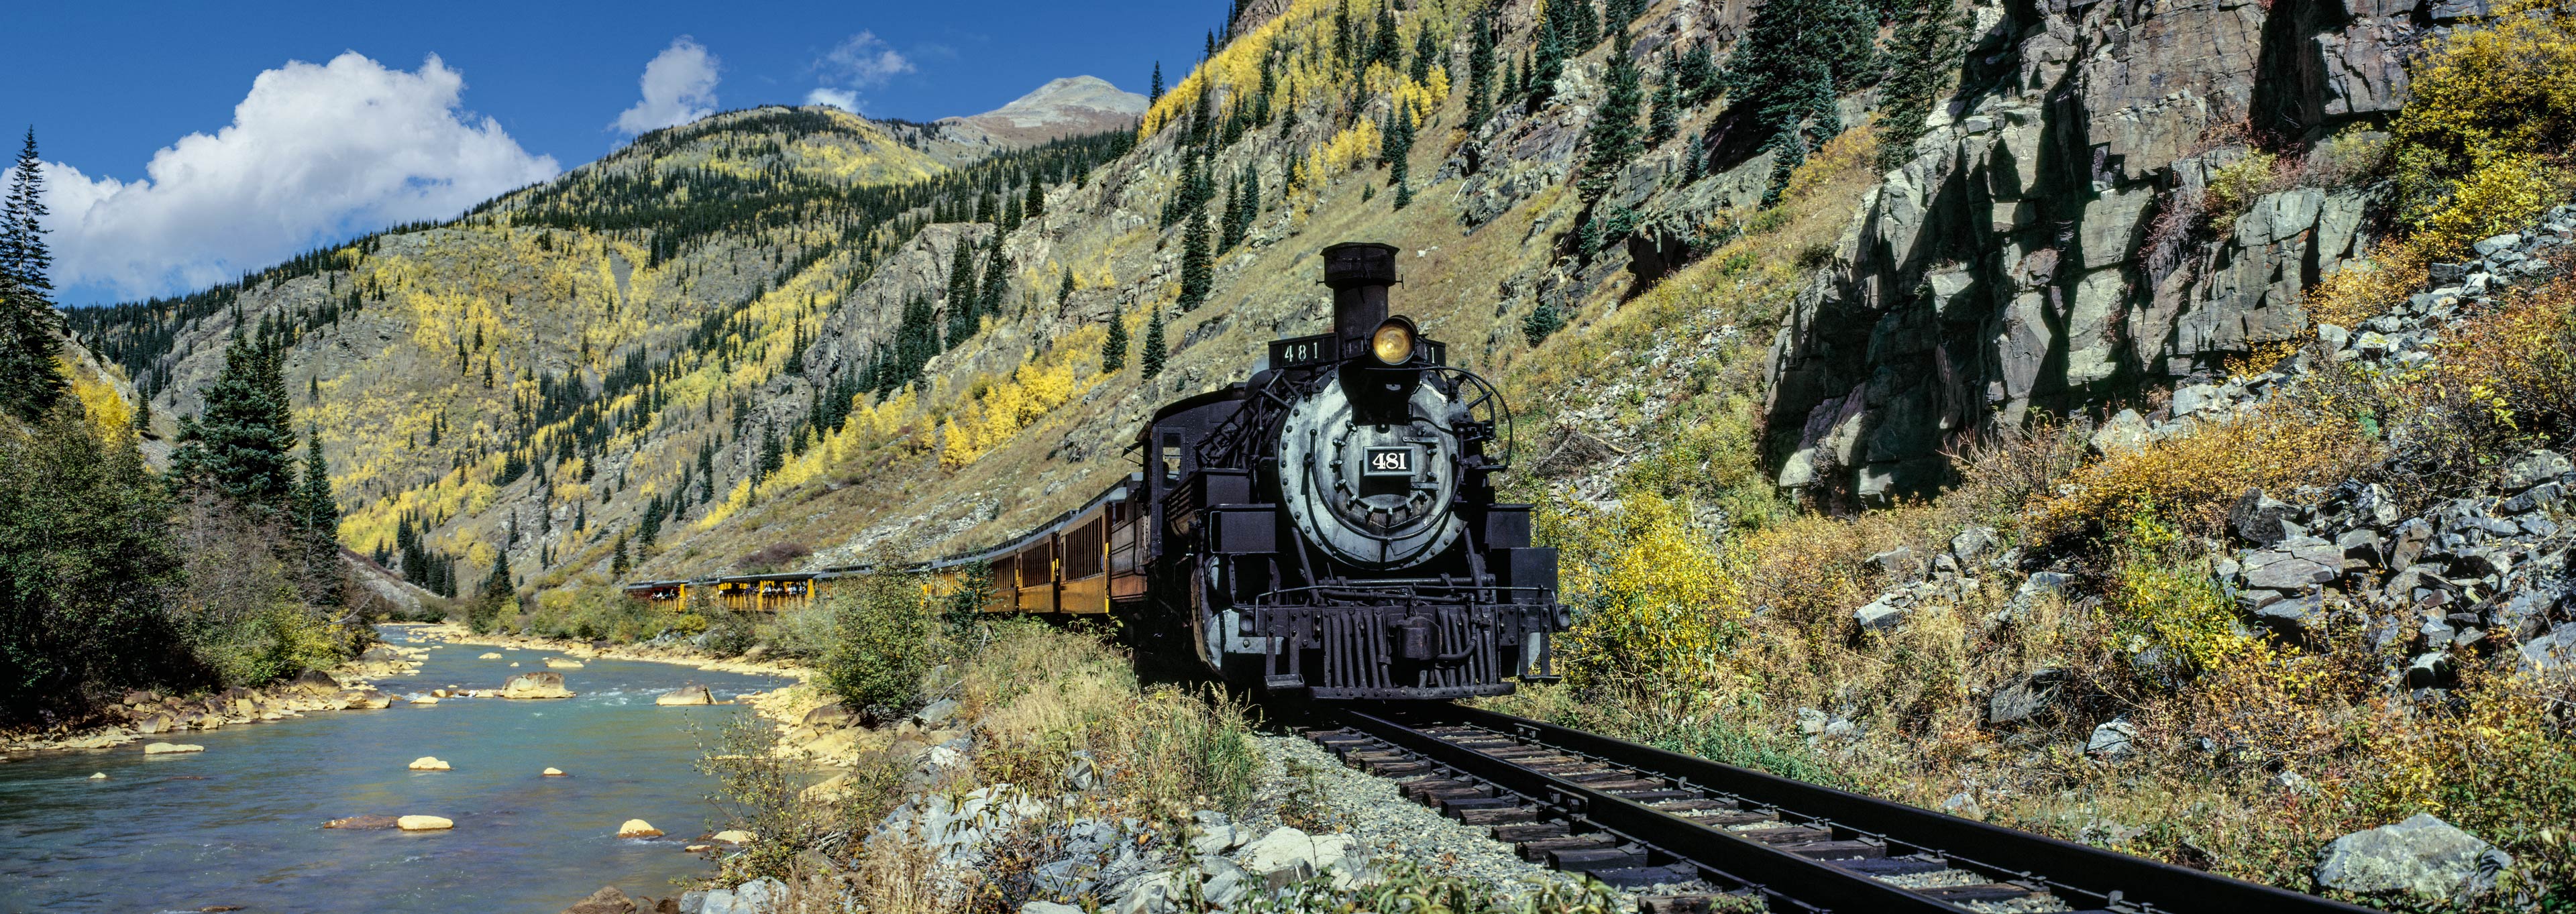 Durango and Silverton Narrow Gauge Railroad,  Animas River, Colorado, USA (77269.siskedit-a)